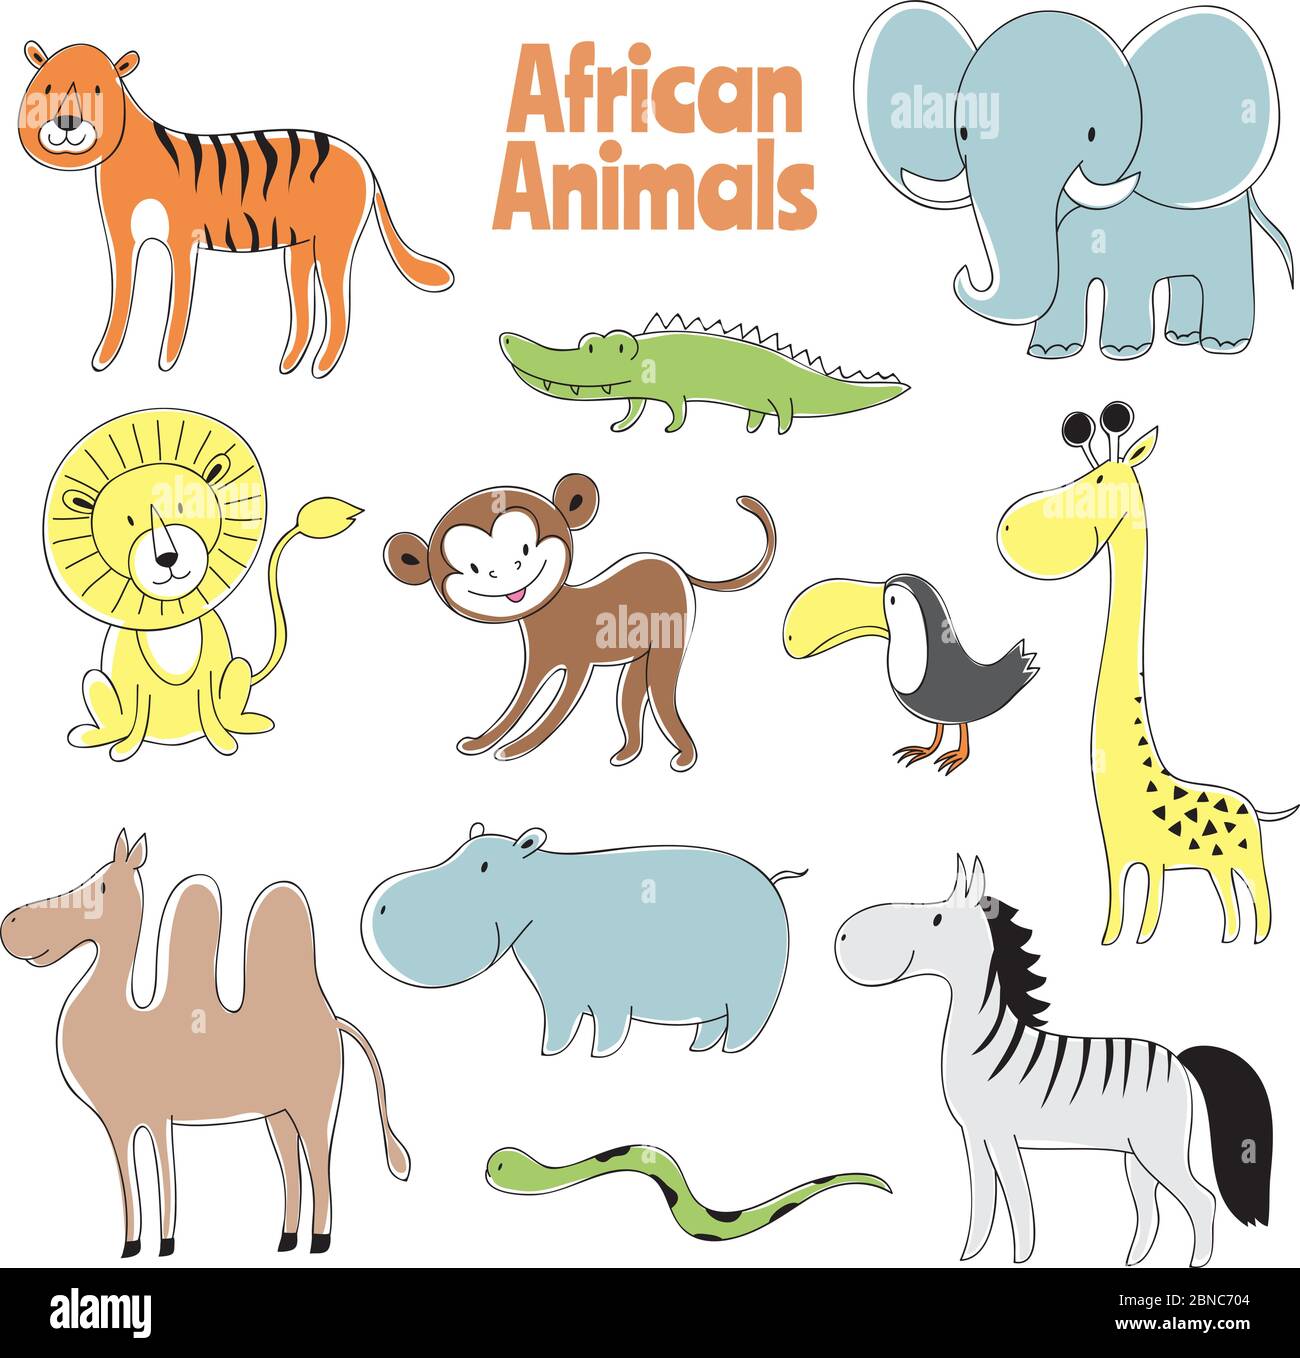 Animaux Doodle. Lion d'animaux de bébé africains, singe et crocodile, éléphant et girafe, zébra et personnages vectoriels hippopotames. Illustration de l'hippopotame et du crocodile, alligator africain, girafe afrique Illustration de Vecteur